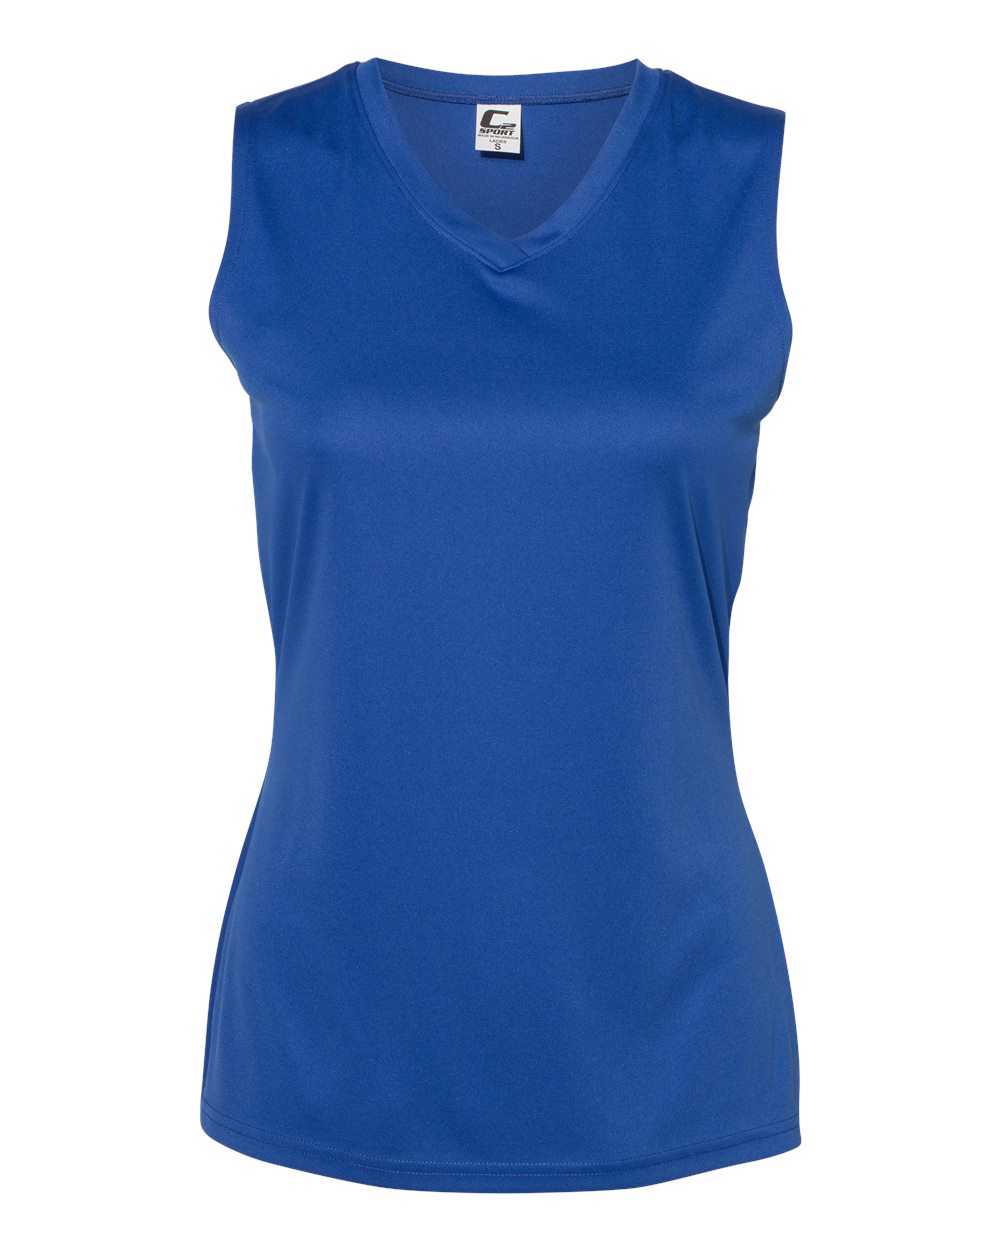 Yvette Anywhere Round Neck Side Split Running T-Shirt | Women's Sports T-Shirt - M66W Blue Melange, S